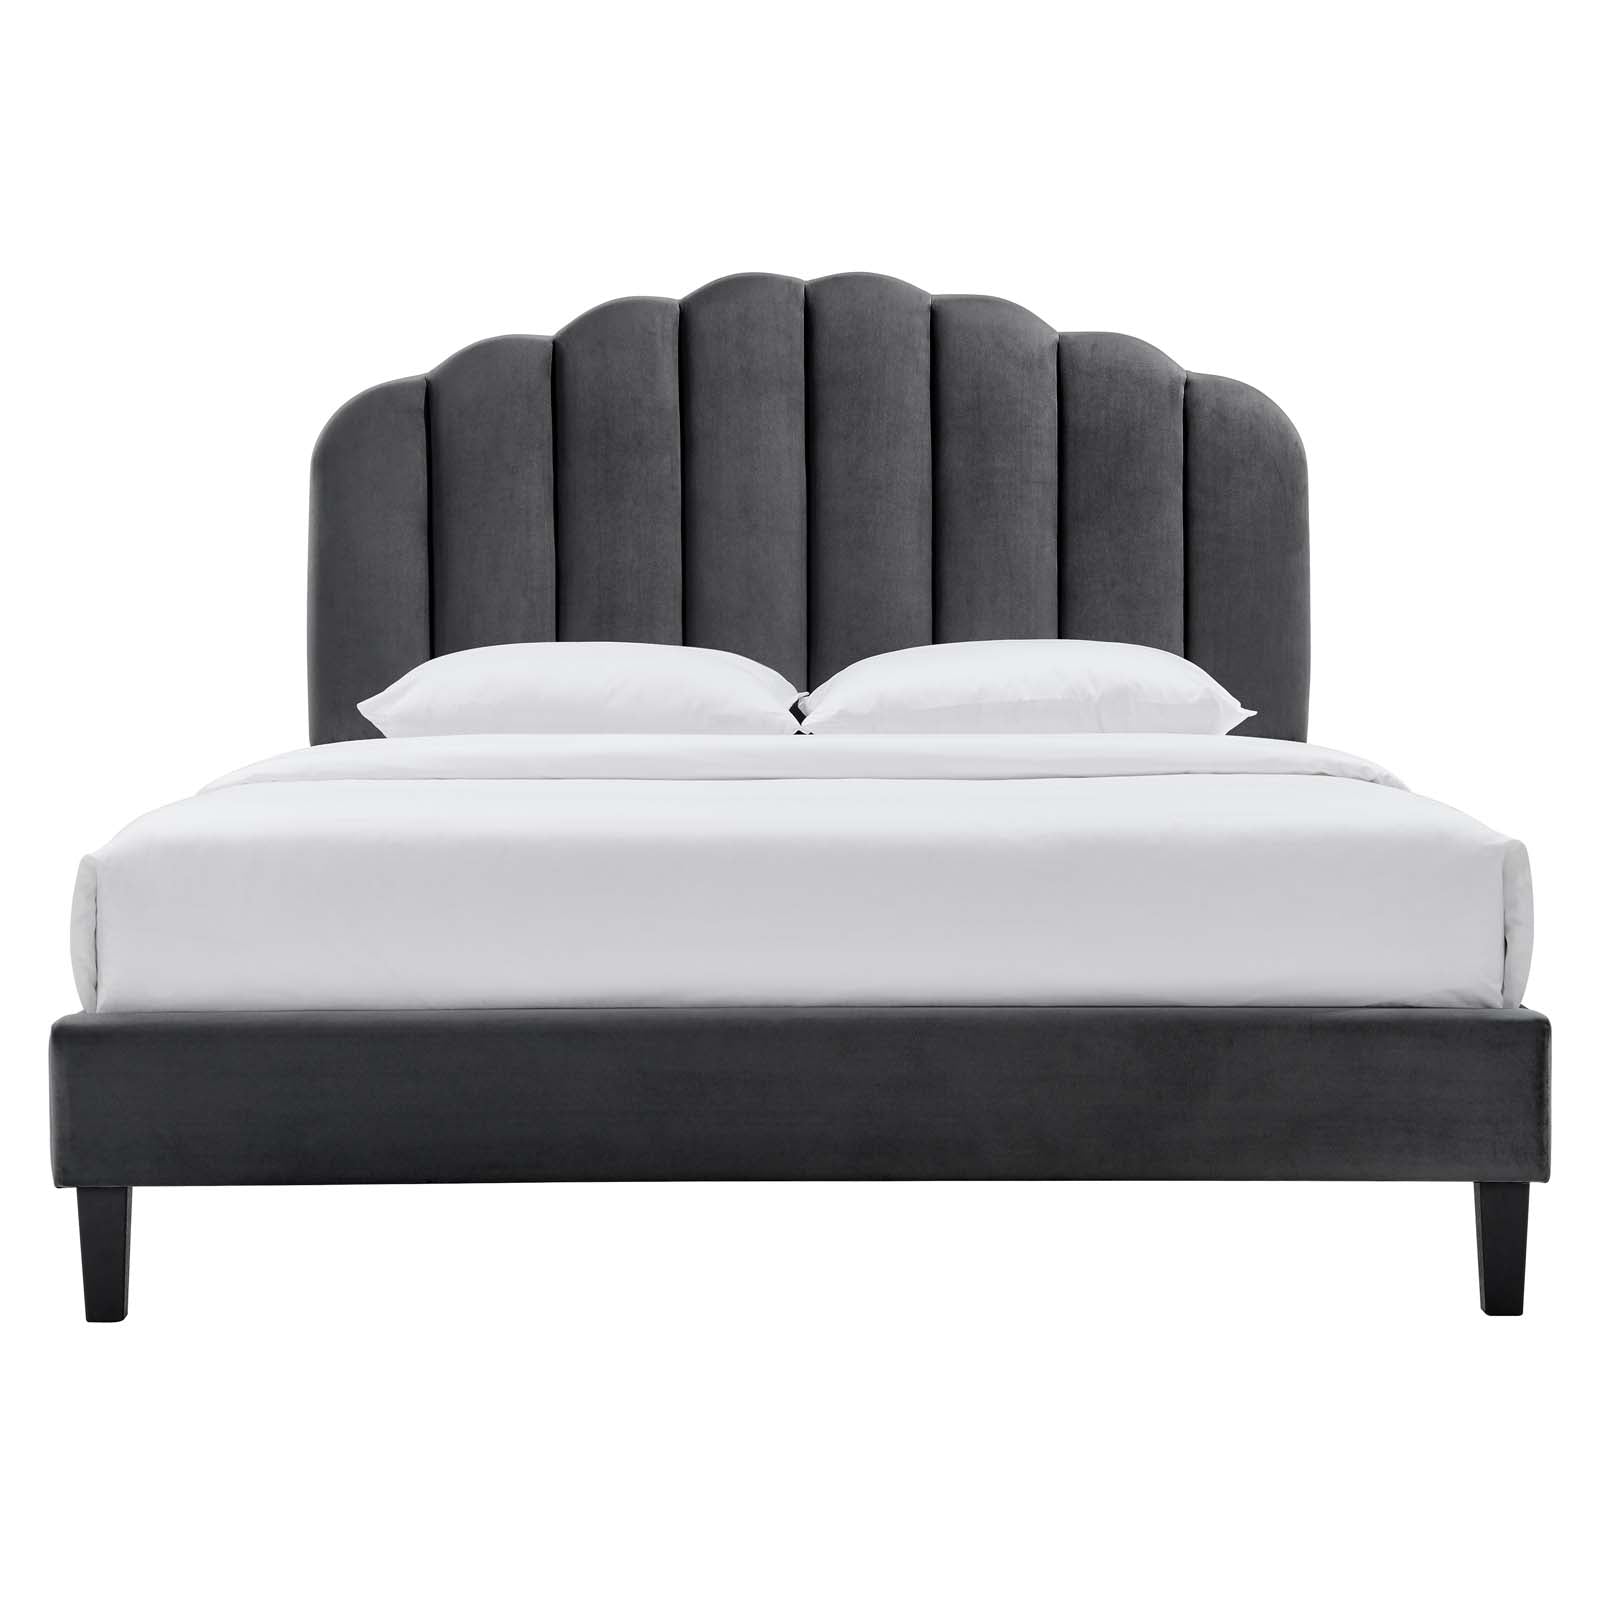 Daisy Performance Velvet Platform Bed with Black Legs - East Shore Modern Home Furnishings